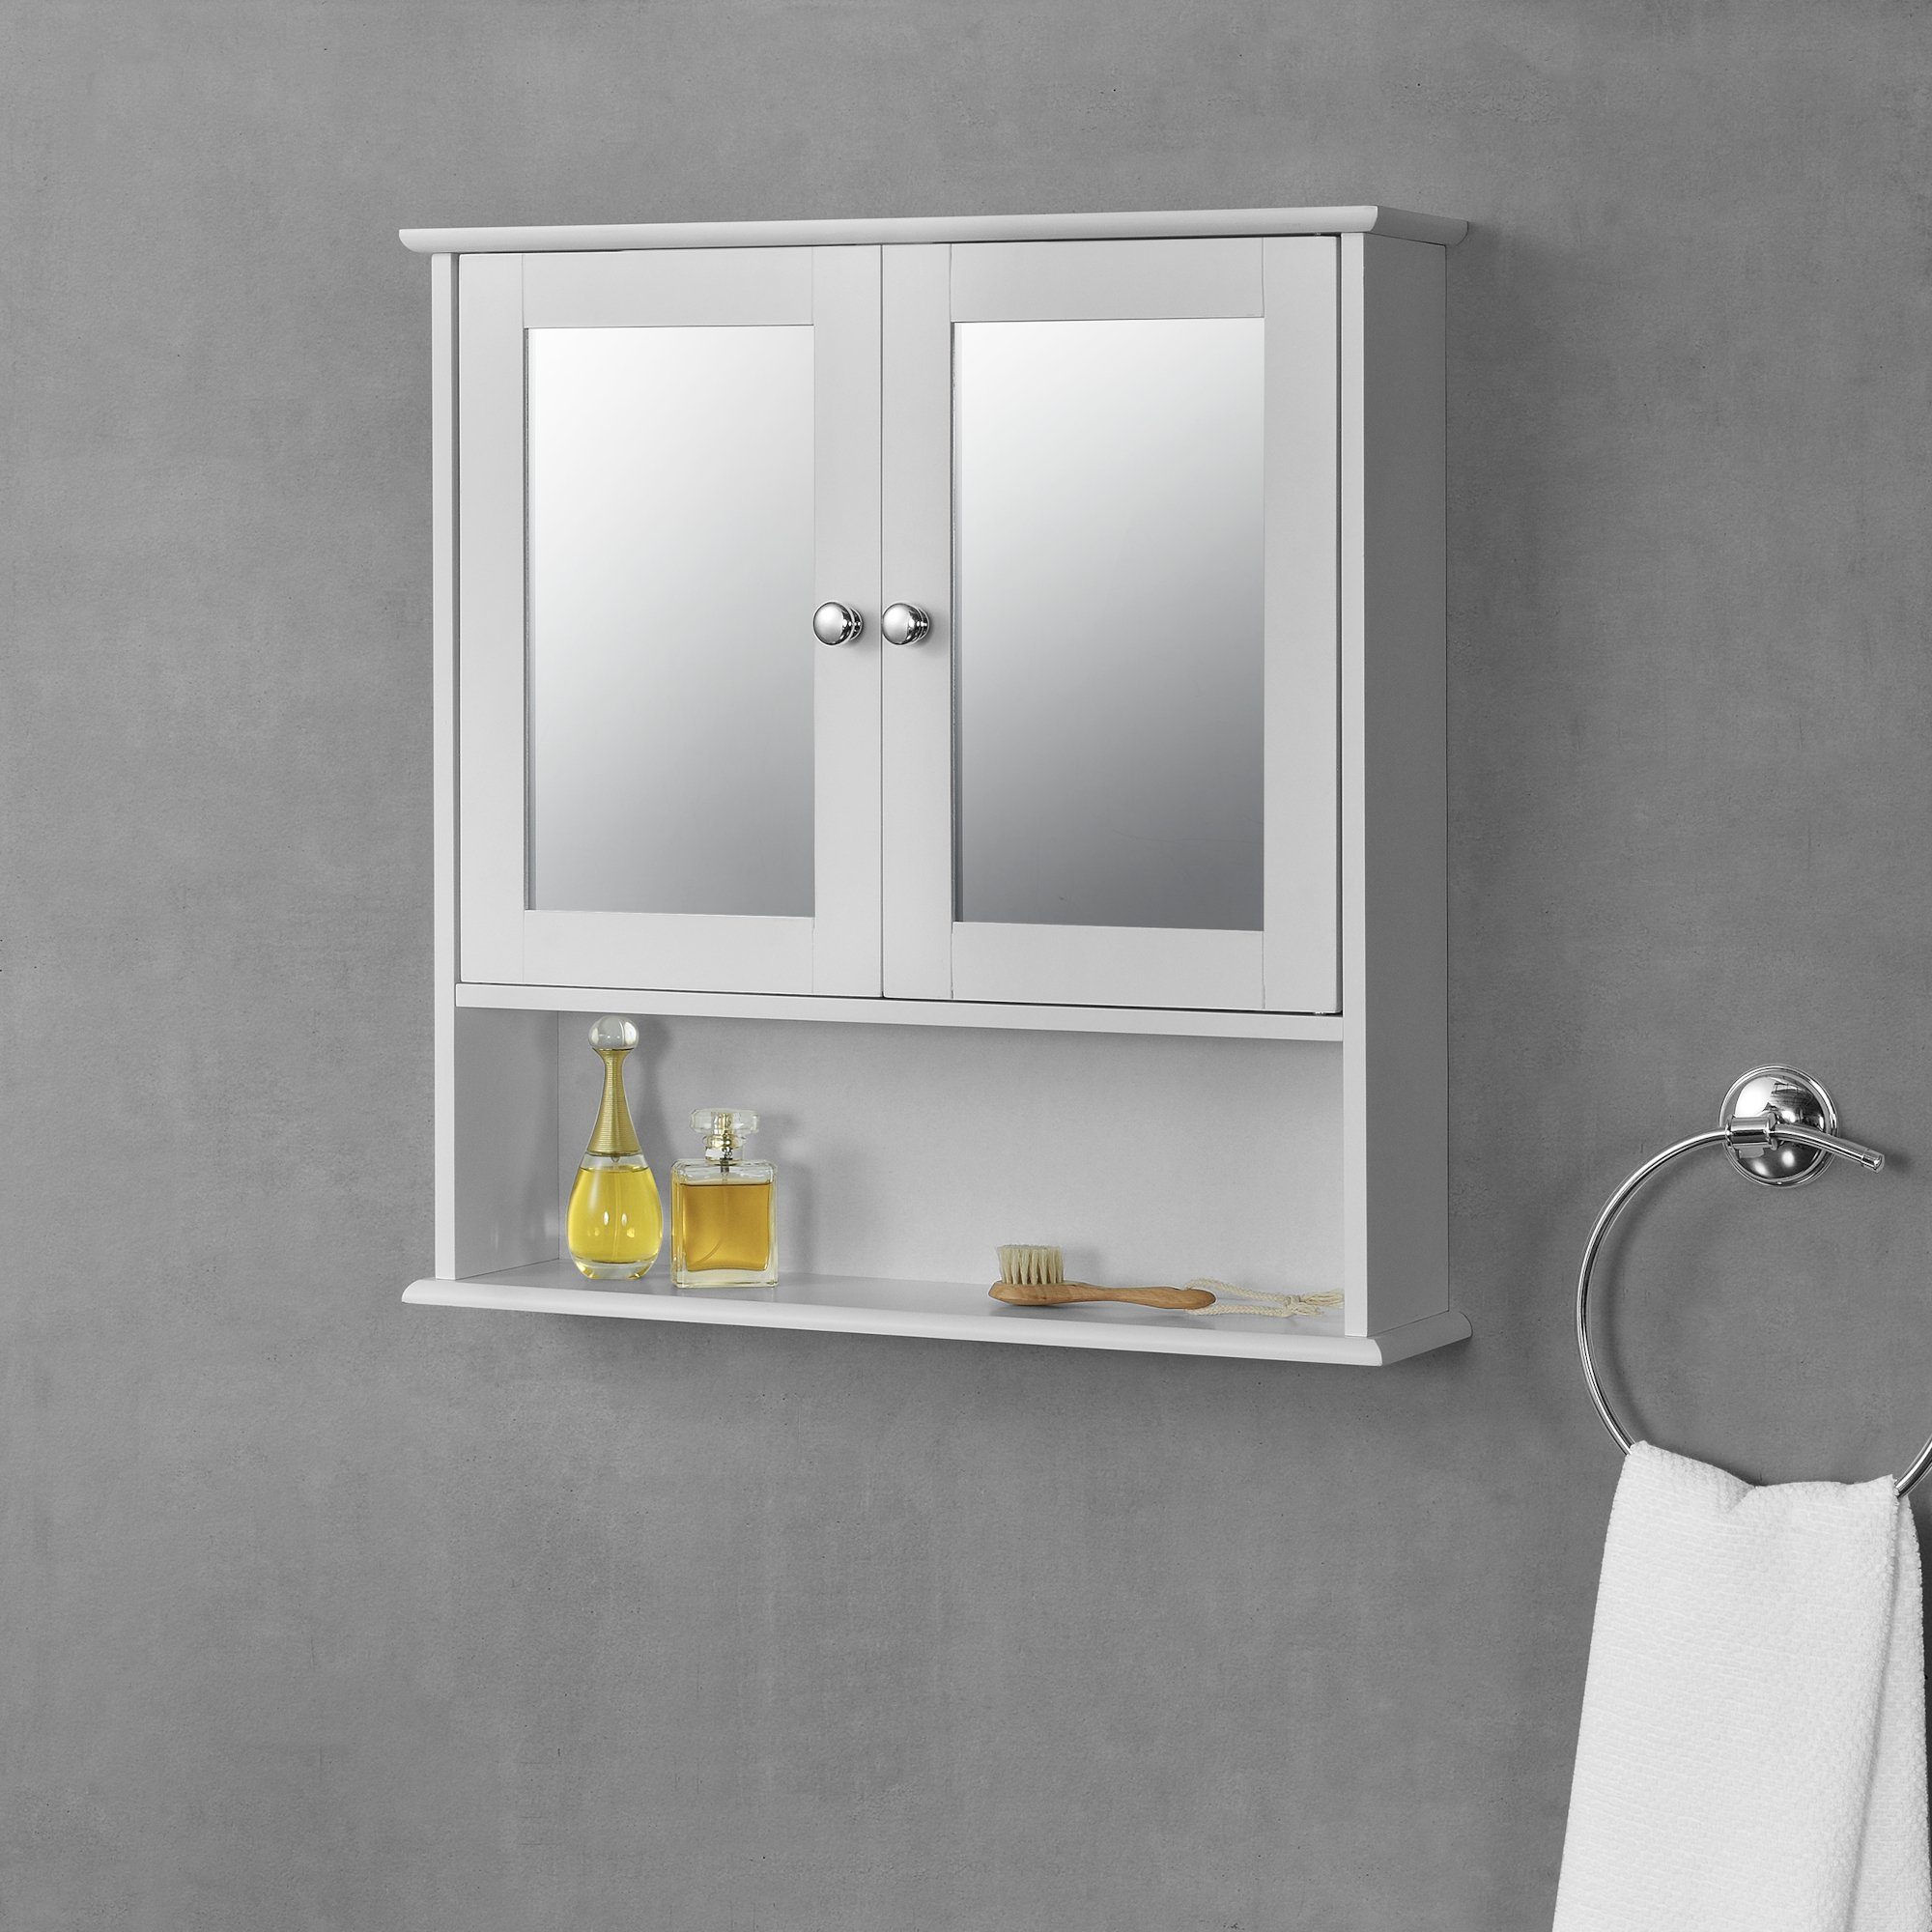 en.casa Badezimmerspiegelschrank »Linz« Badezimmerschrank mit Spiegel und  Ablage 58x56x13cm Badschrank MDF weiß